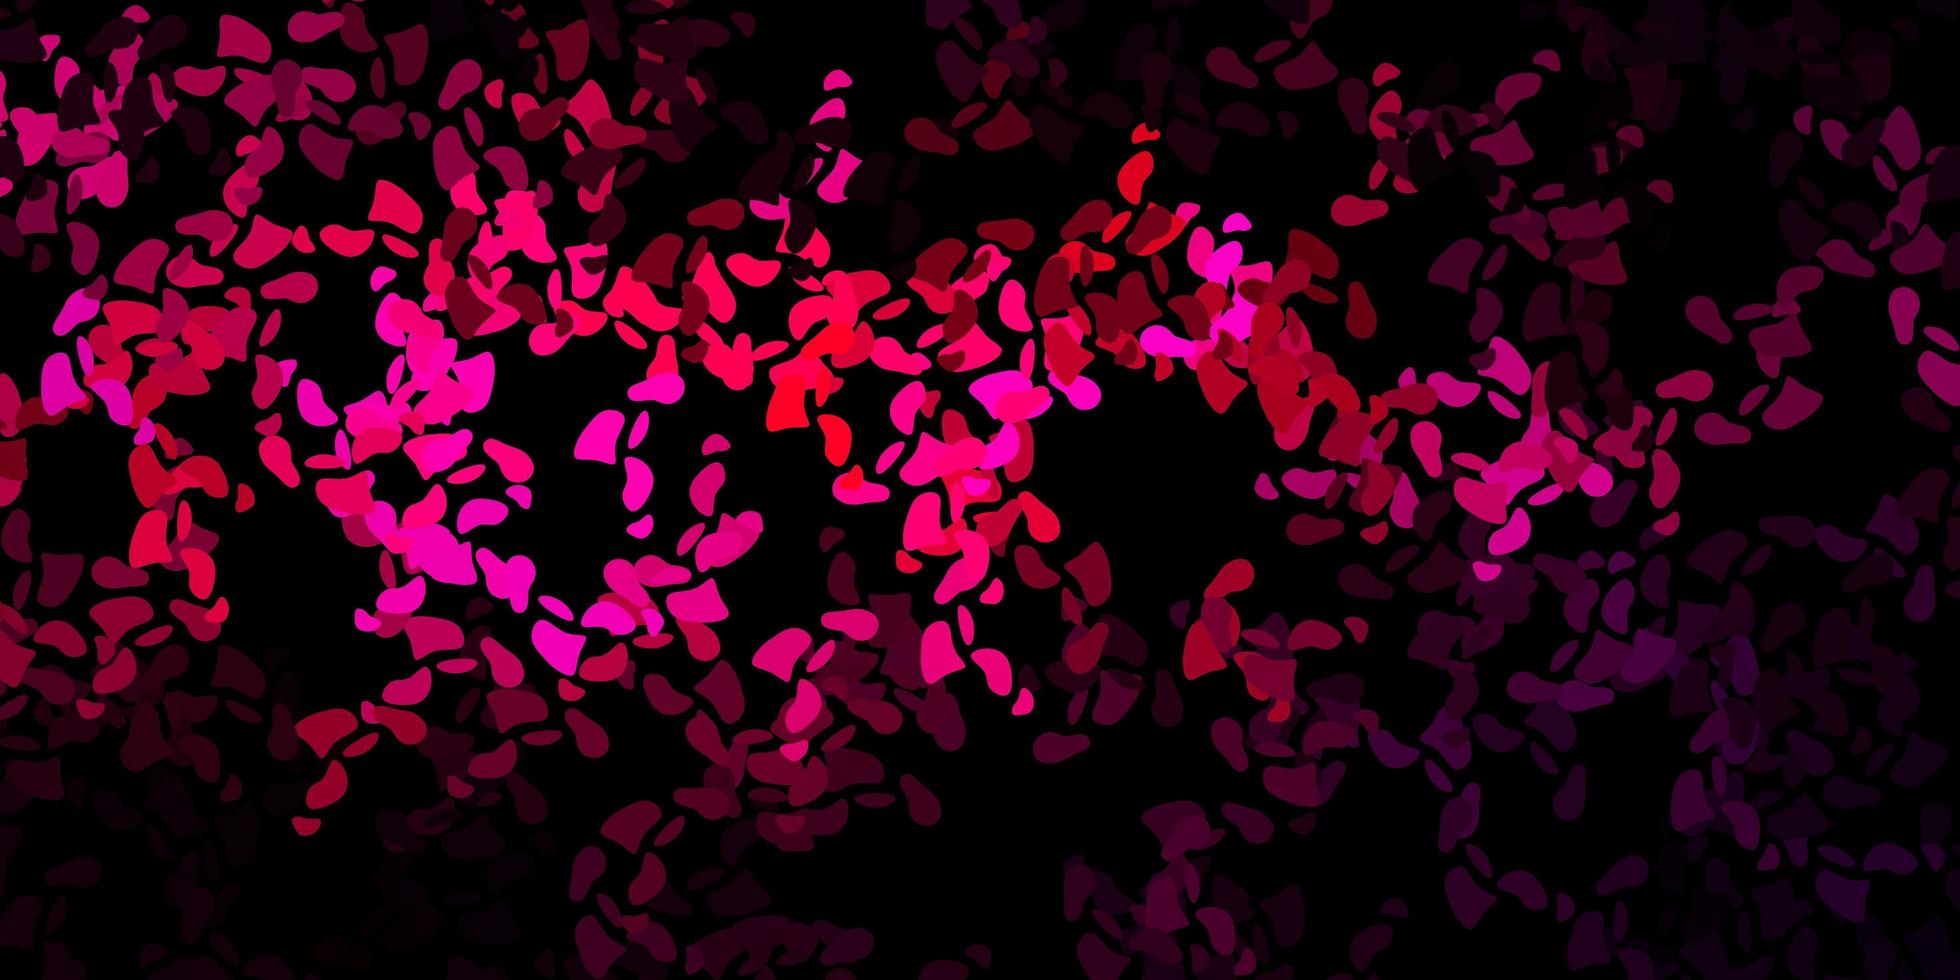 padrão de vetor rosa escuro com formas abstratas.